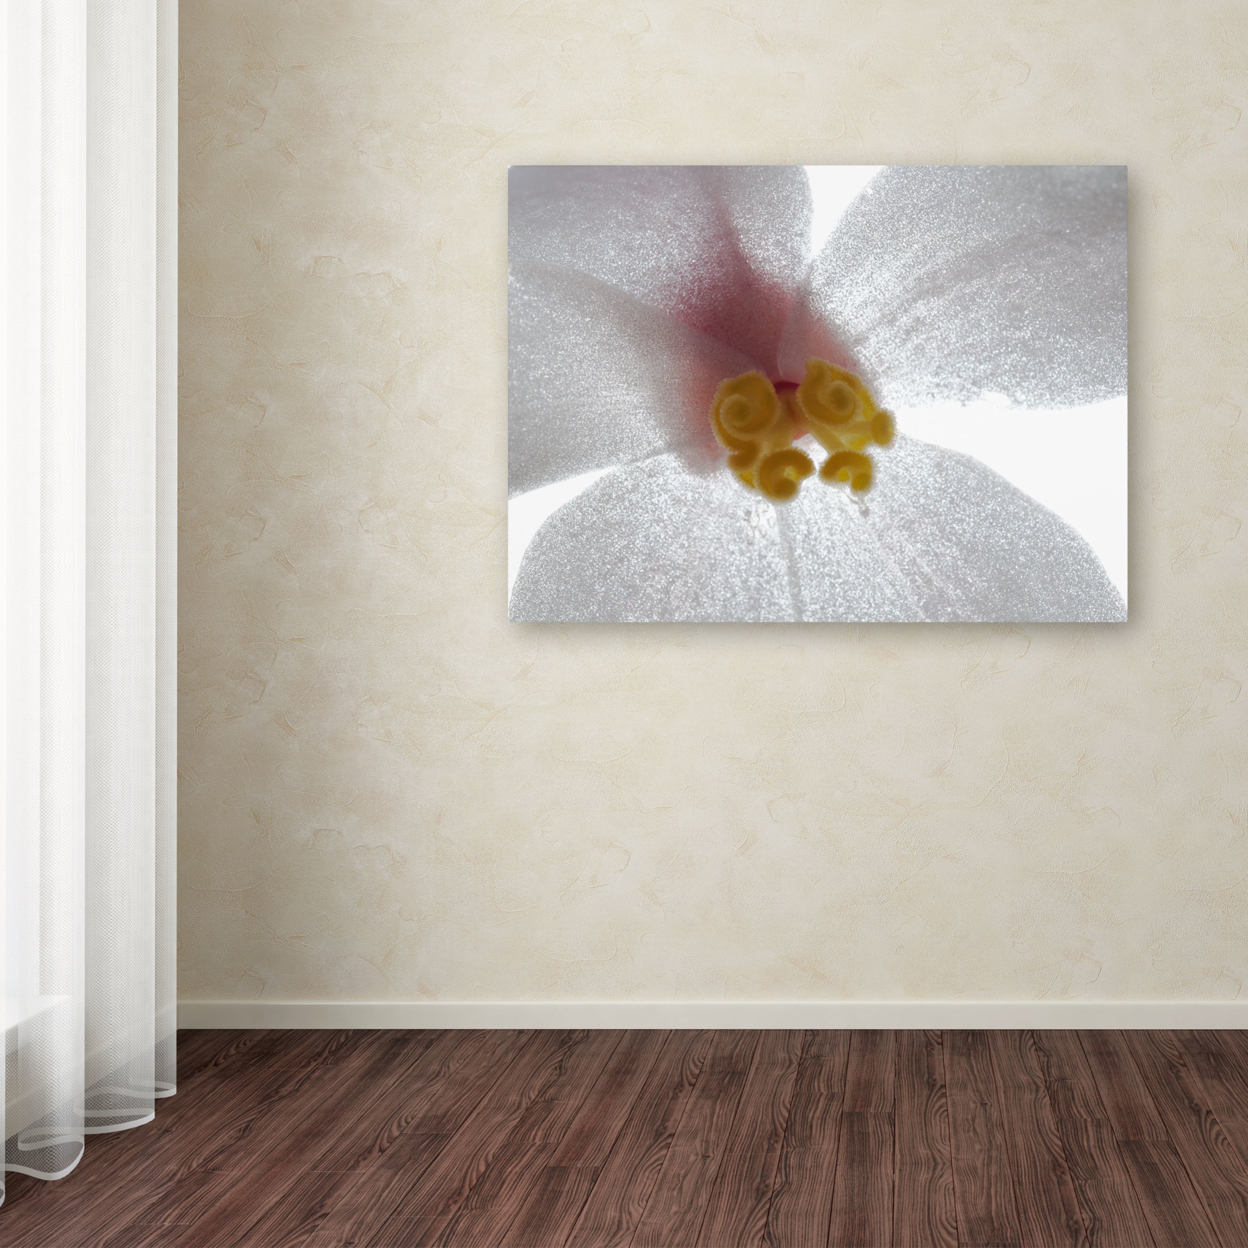 Kurt Shaffer 'Escargo Begonia' Canvas Wall Art 35 X 47 Inches